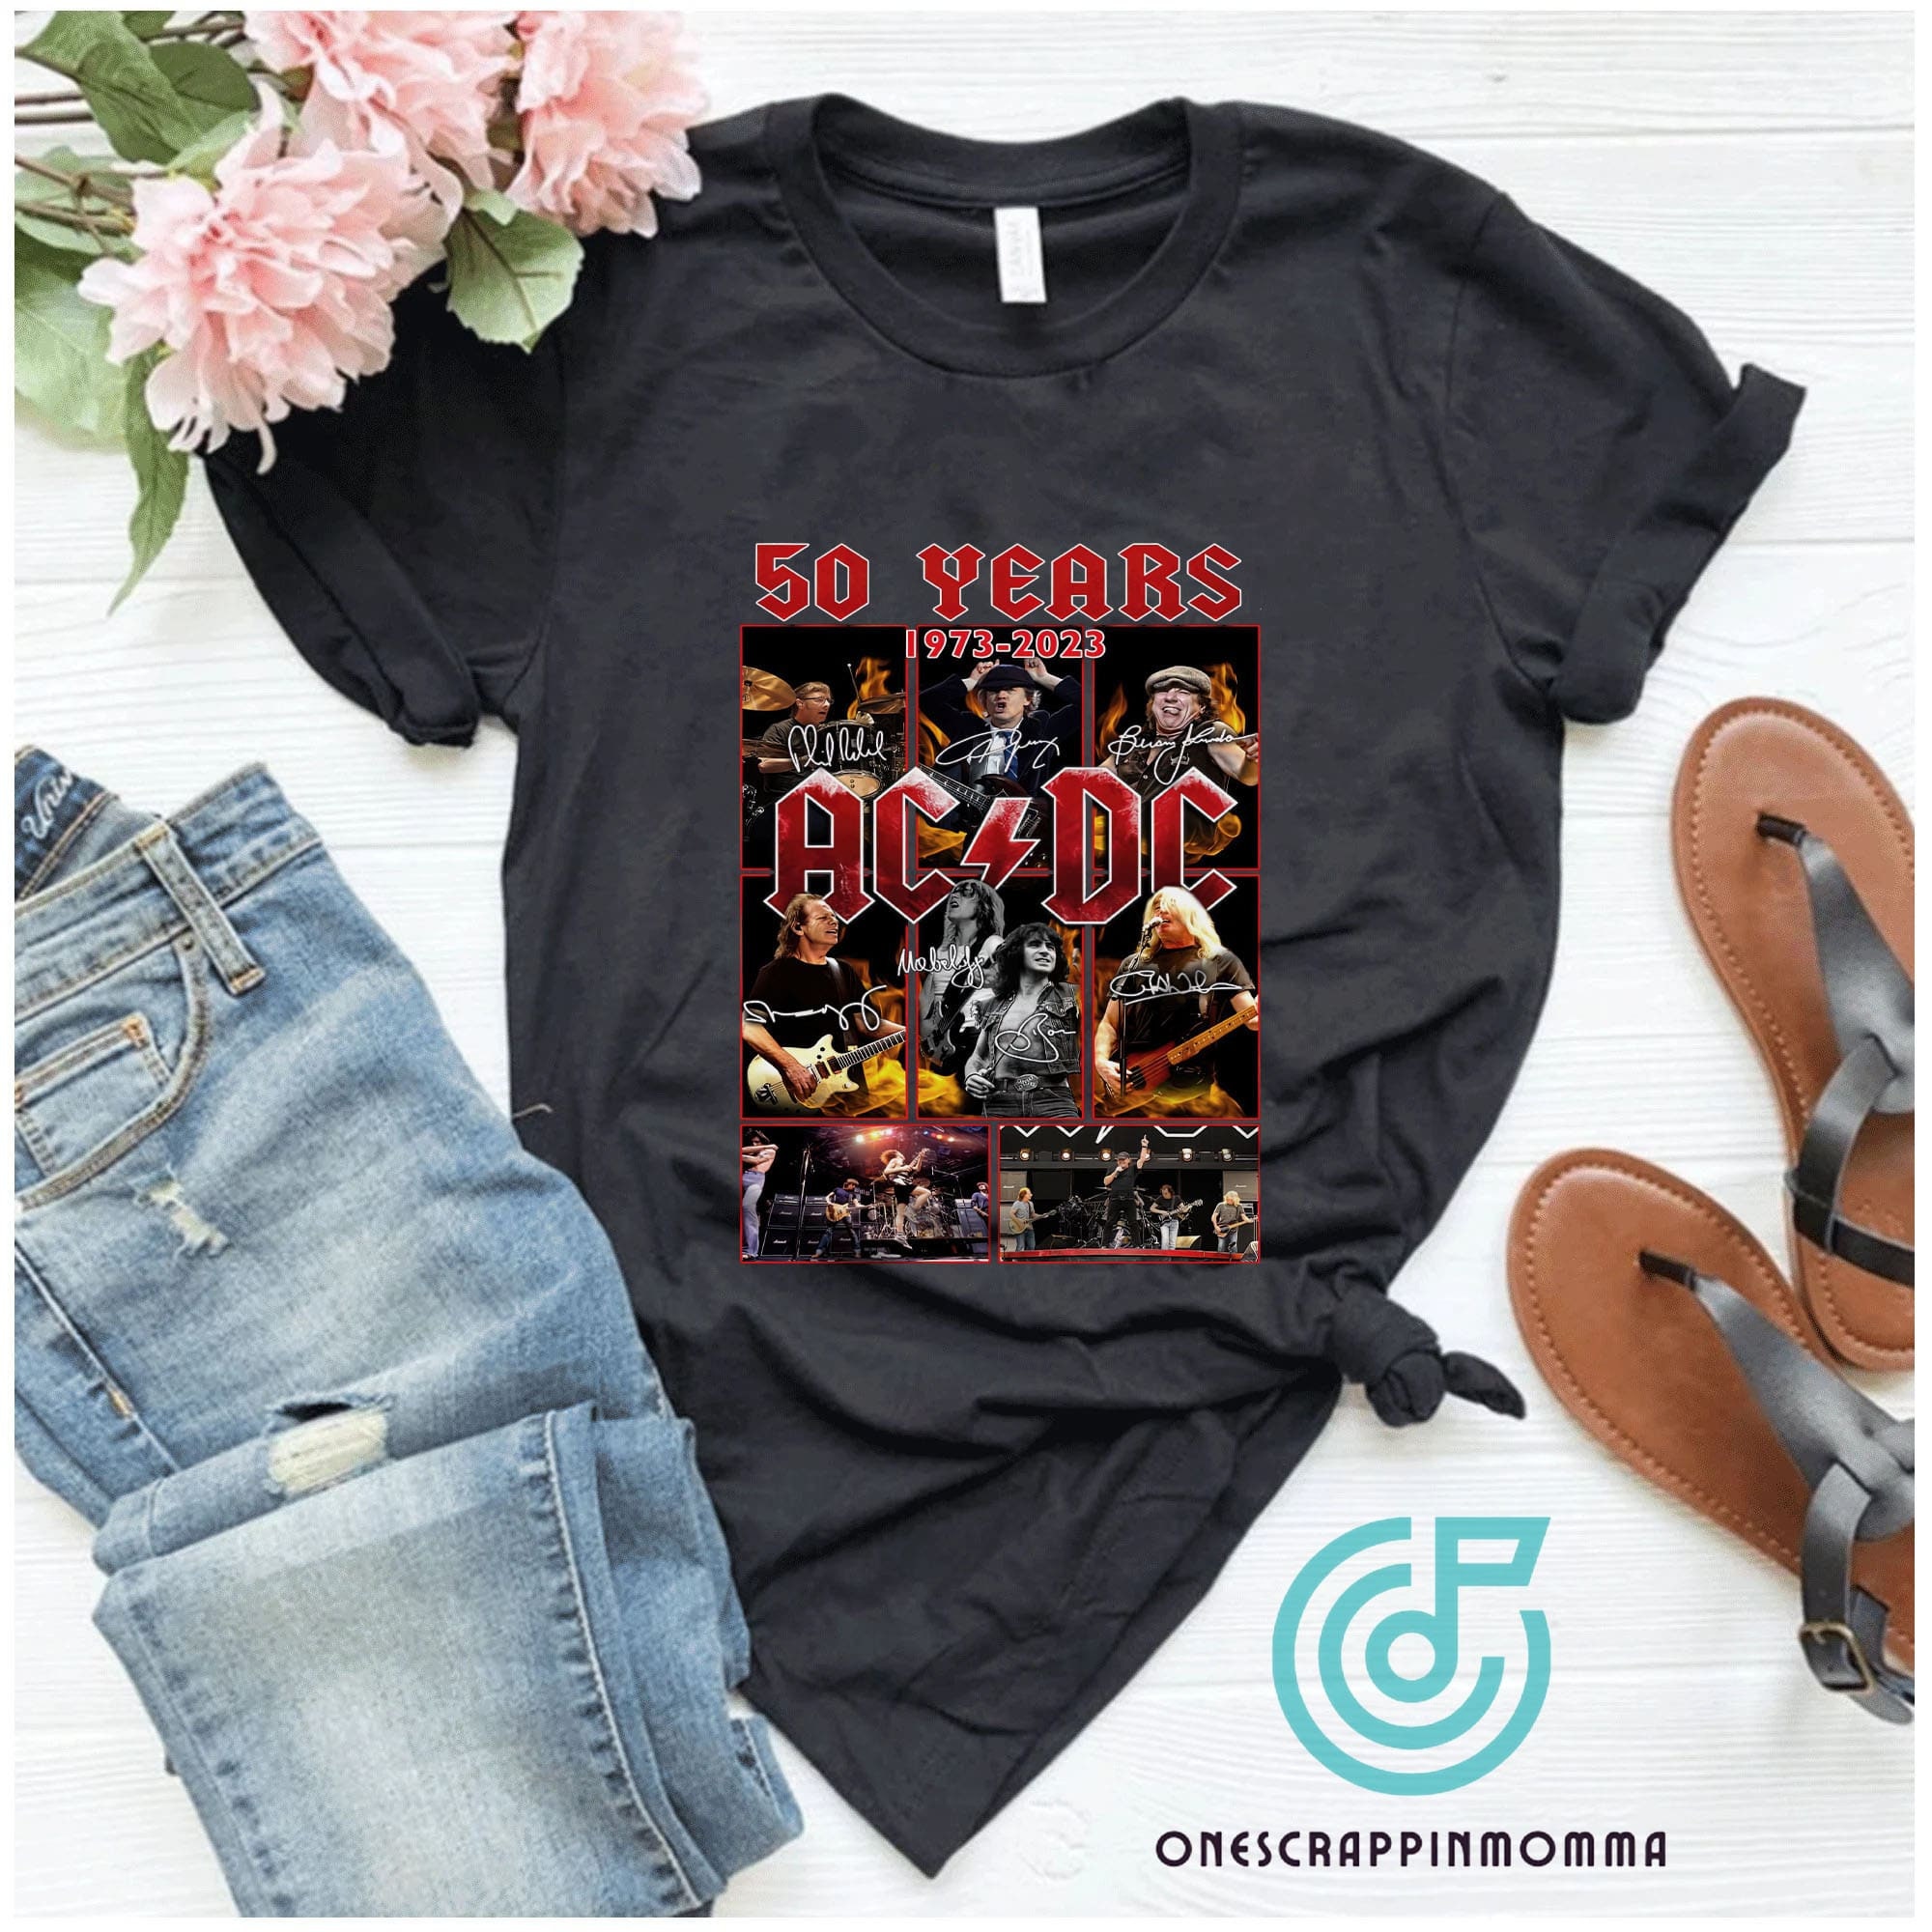 50 Years Anniversary 1973-2023 Acdc Rock Band Unisex T-Shirt